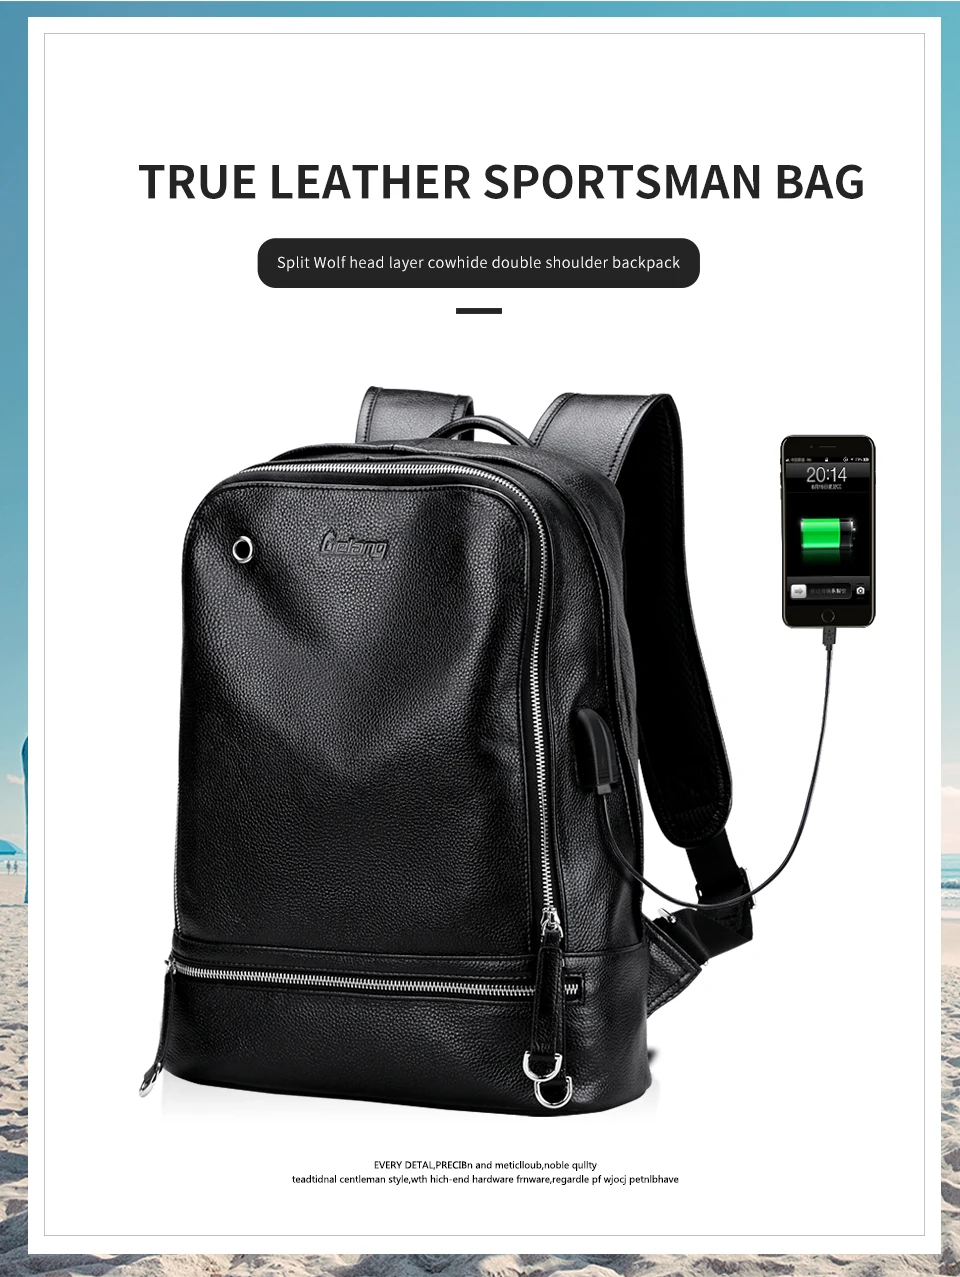 Мужской рюкзак из натуральной кожи для ноутбука, usb зарядное устройство, черный рюкзак высокого качества, водонепроницаемый мужской кожаный рюкзак